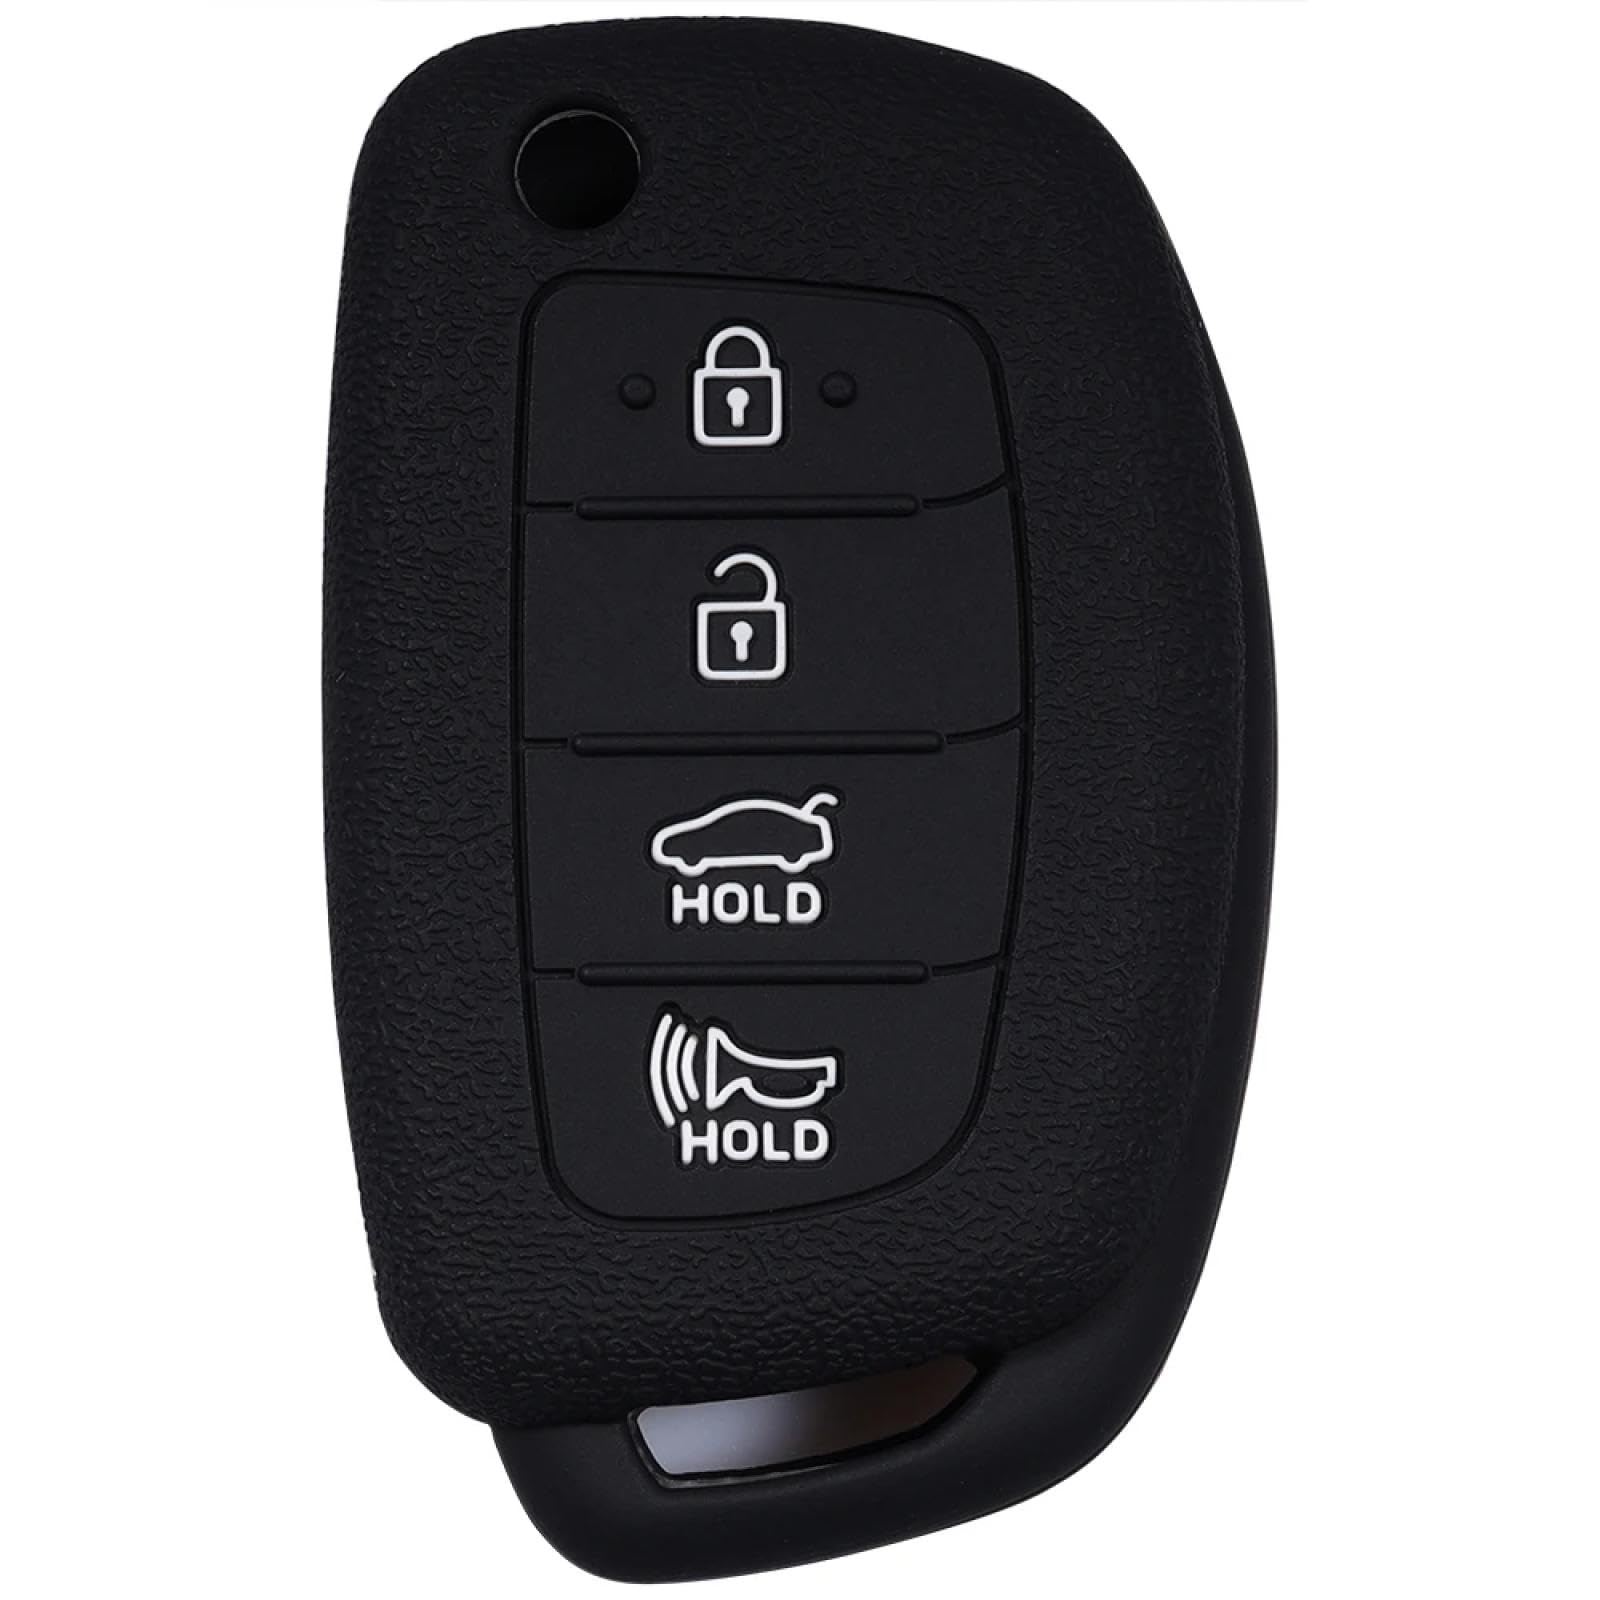 Autoschlüsselhülle Für Hy&undai Tucson 2018 Autoschlüsselgehäuse aus Silikon für Schlüsselfernbedienung, Schlüsselanhänger, Abdeckung, Verkleidung, Autozubehör von JSSZSMSZ